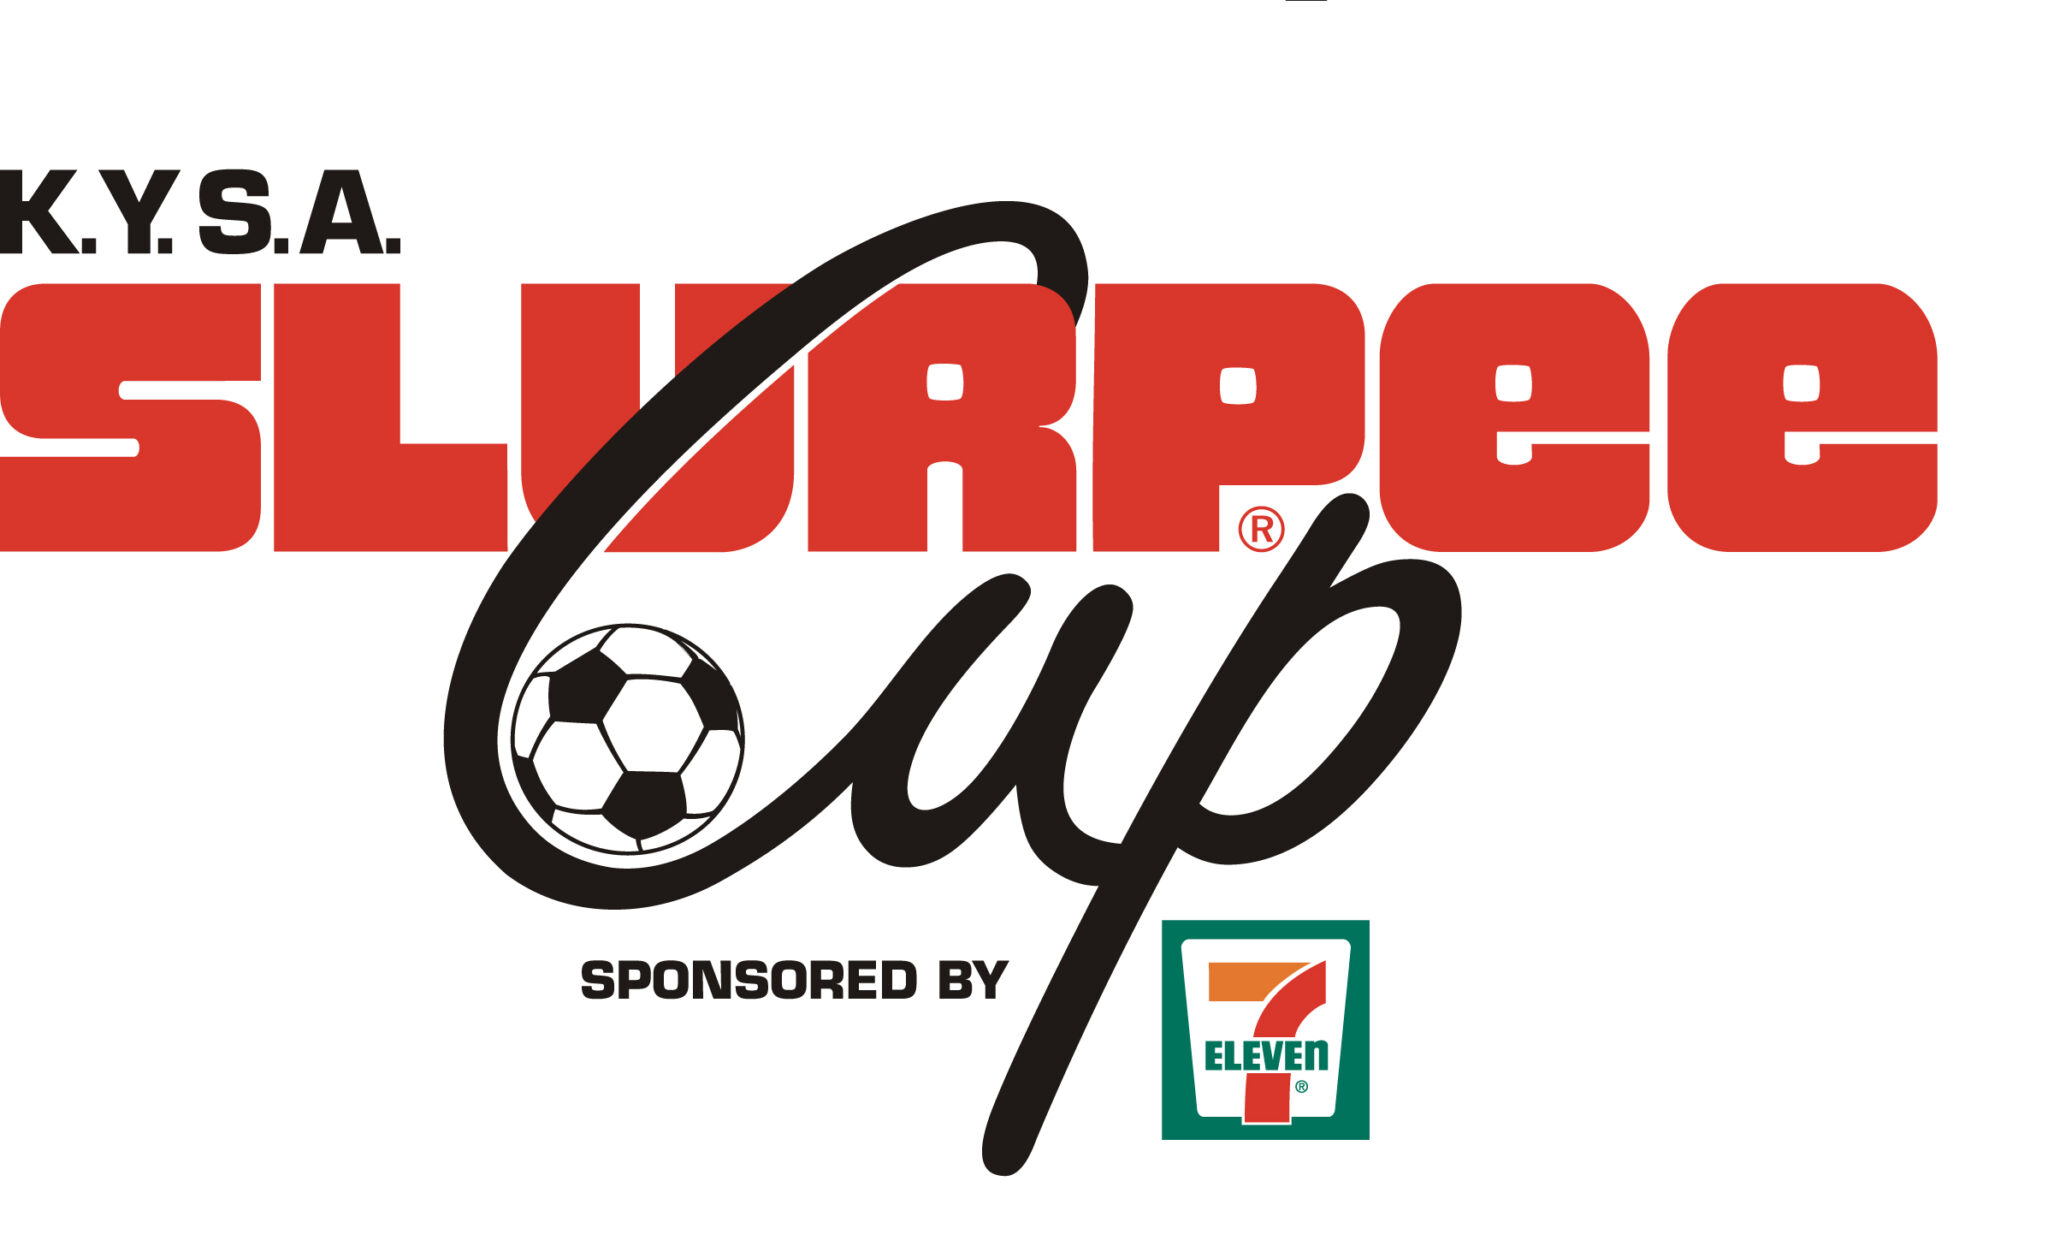 KYSA Slurpee Cup Kamloops Youth Soccer Association